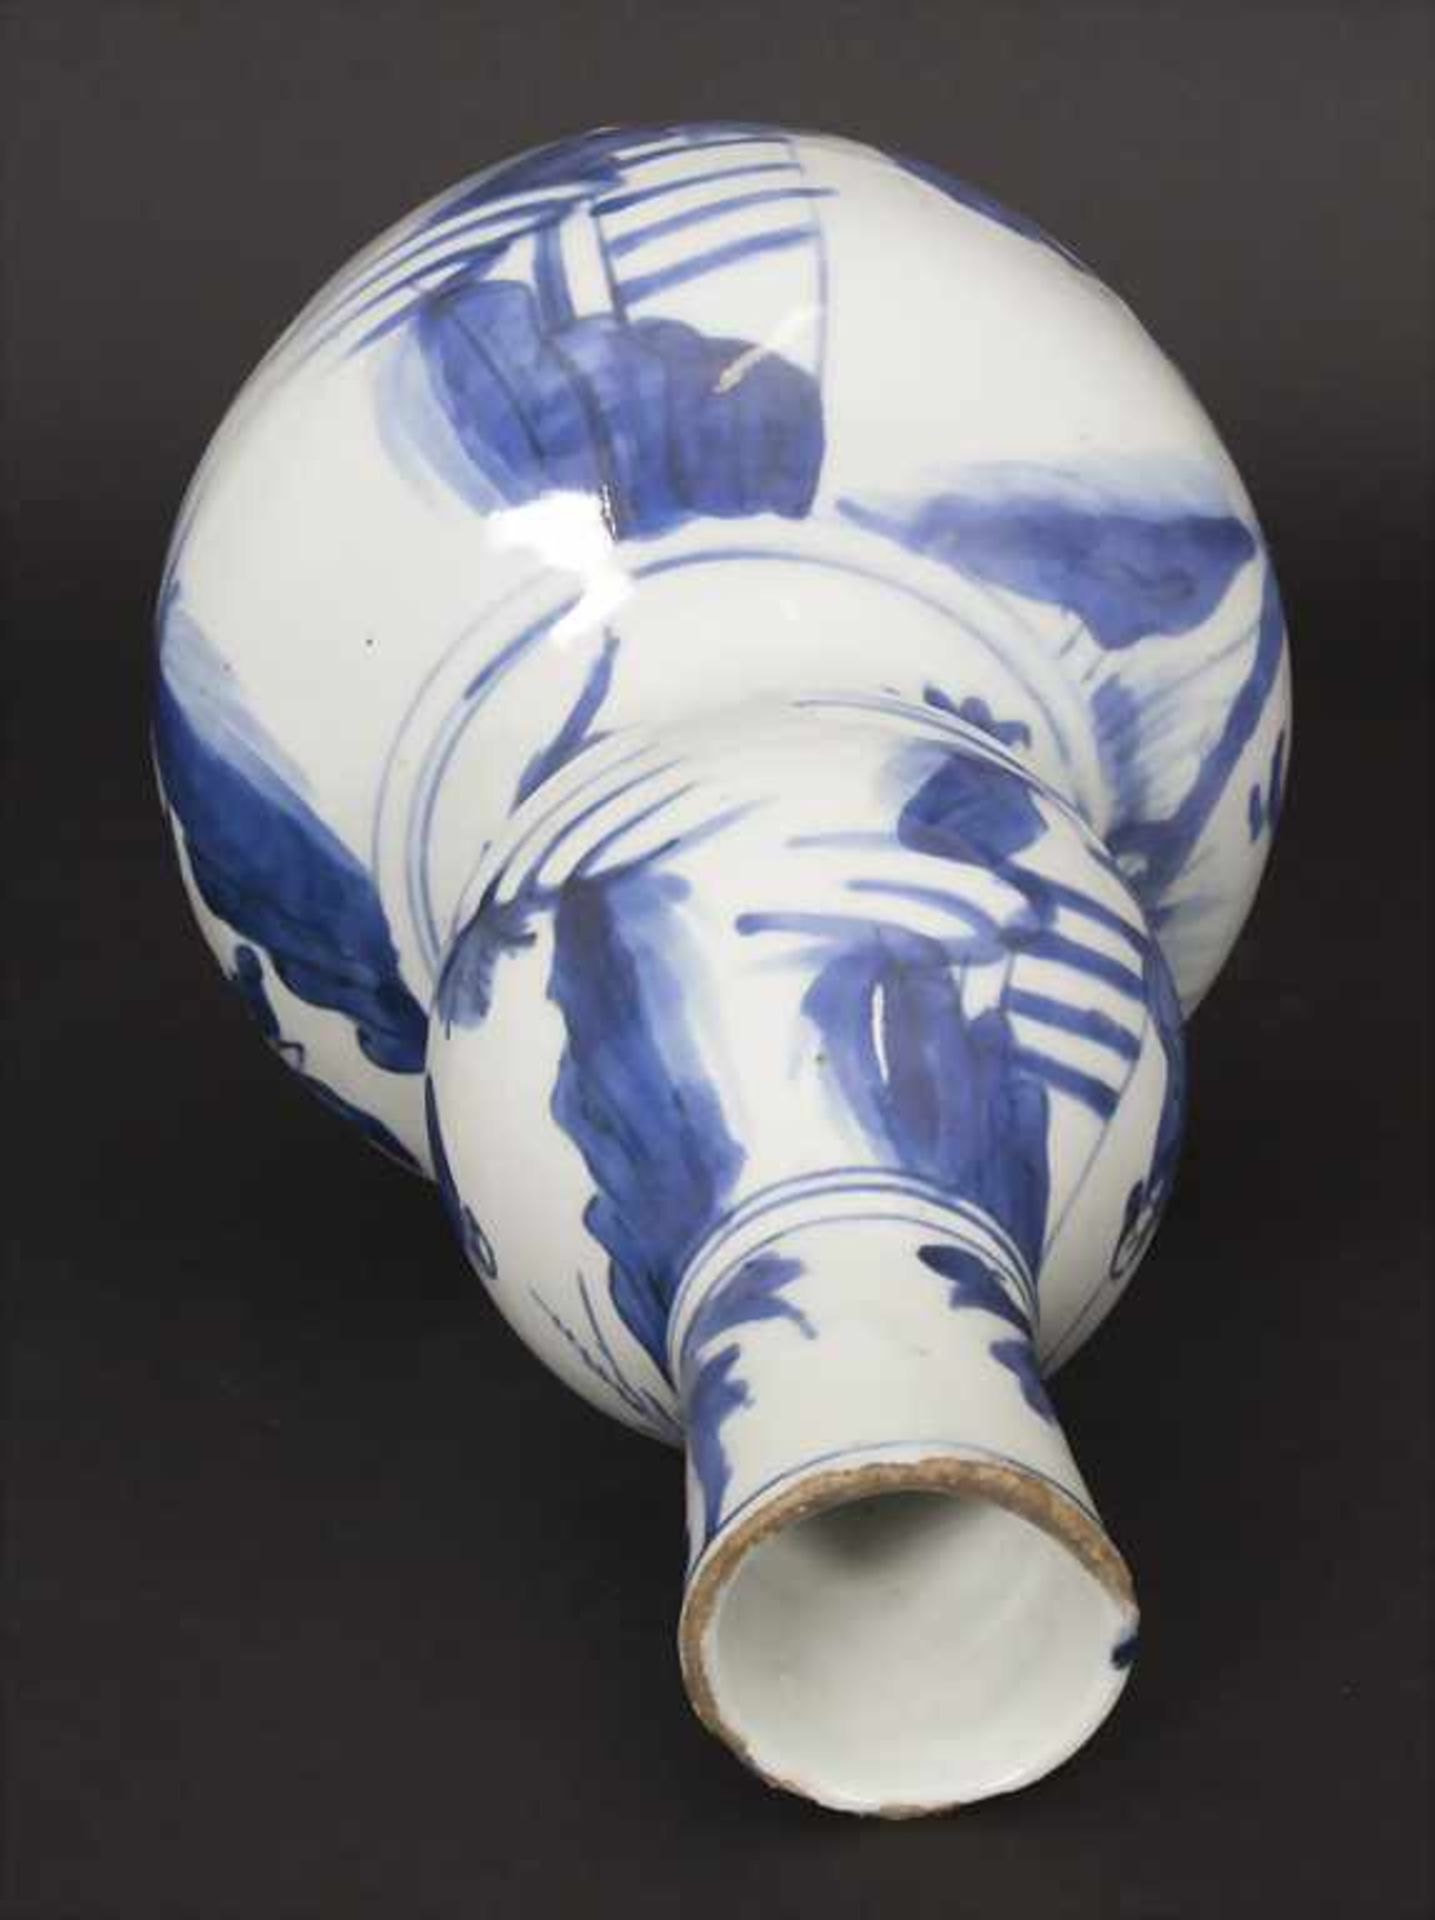 Kalebassenvase / A calabash vase, China, wohl 17. Jh.Material: Porzellan, blaue Unterglasurmalerei, - Bild 11 aus 17